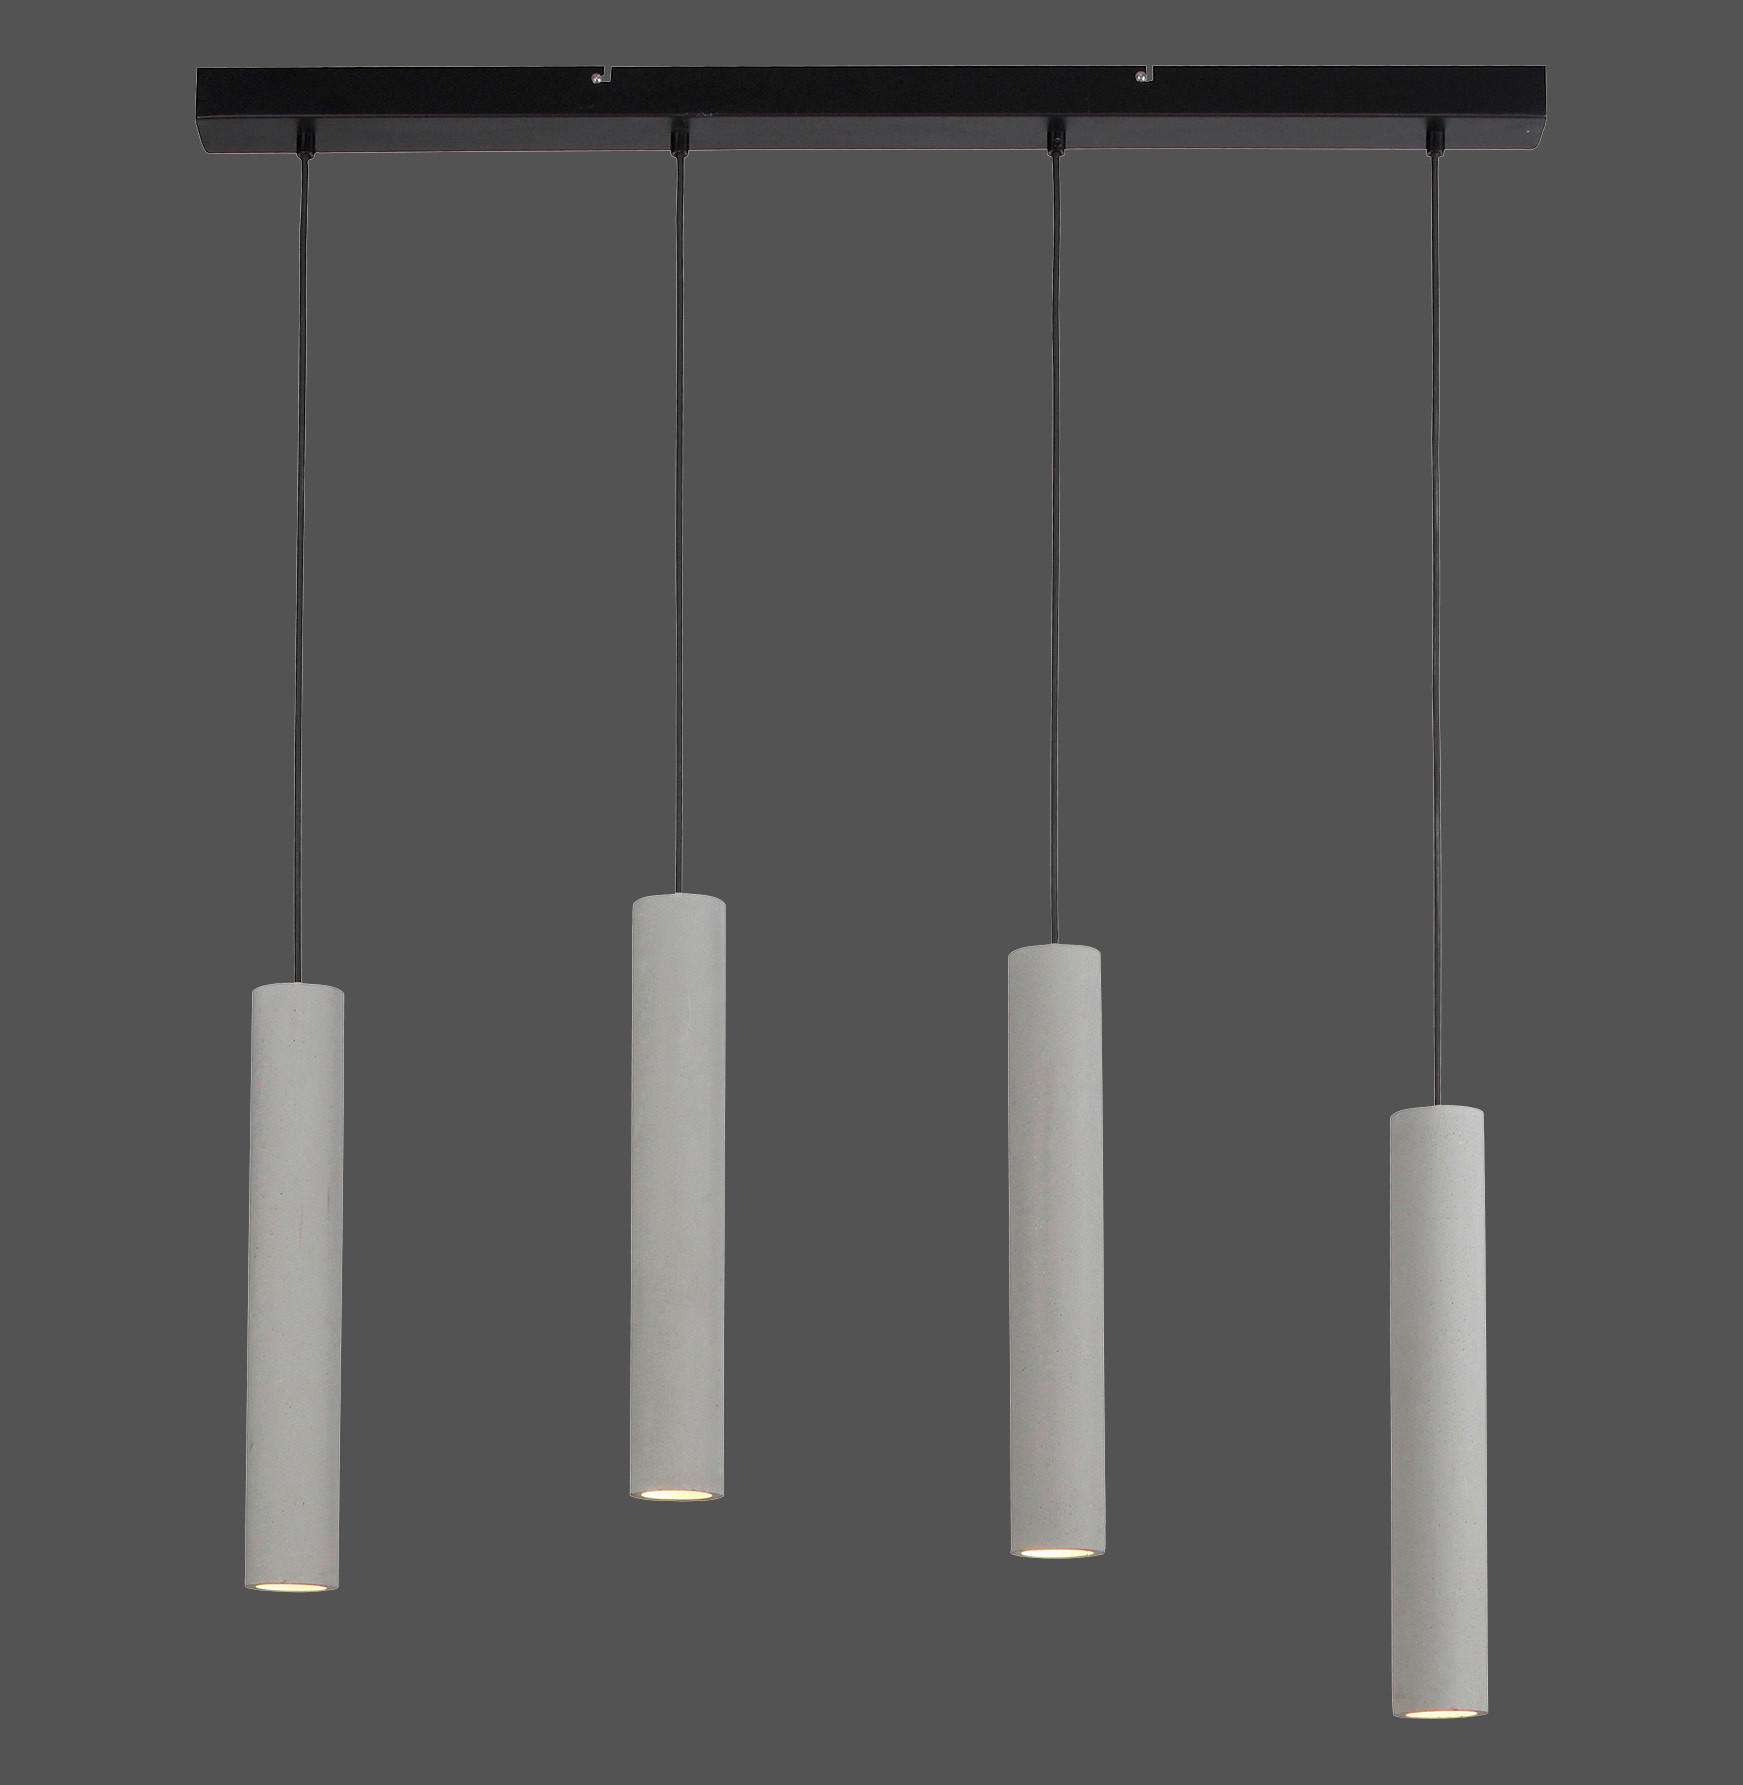 HÄNGELEUCHTE Eton 100/7,5/120 cm   - Greige, Design, Kunststoff/Metall (100/7,5/120cm) - Paul Neuhaus